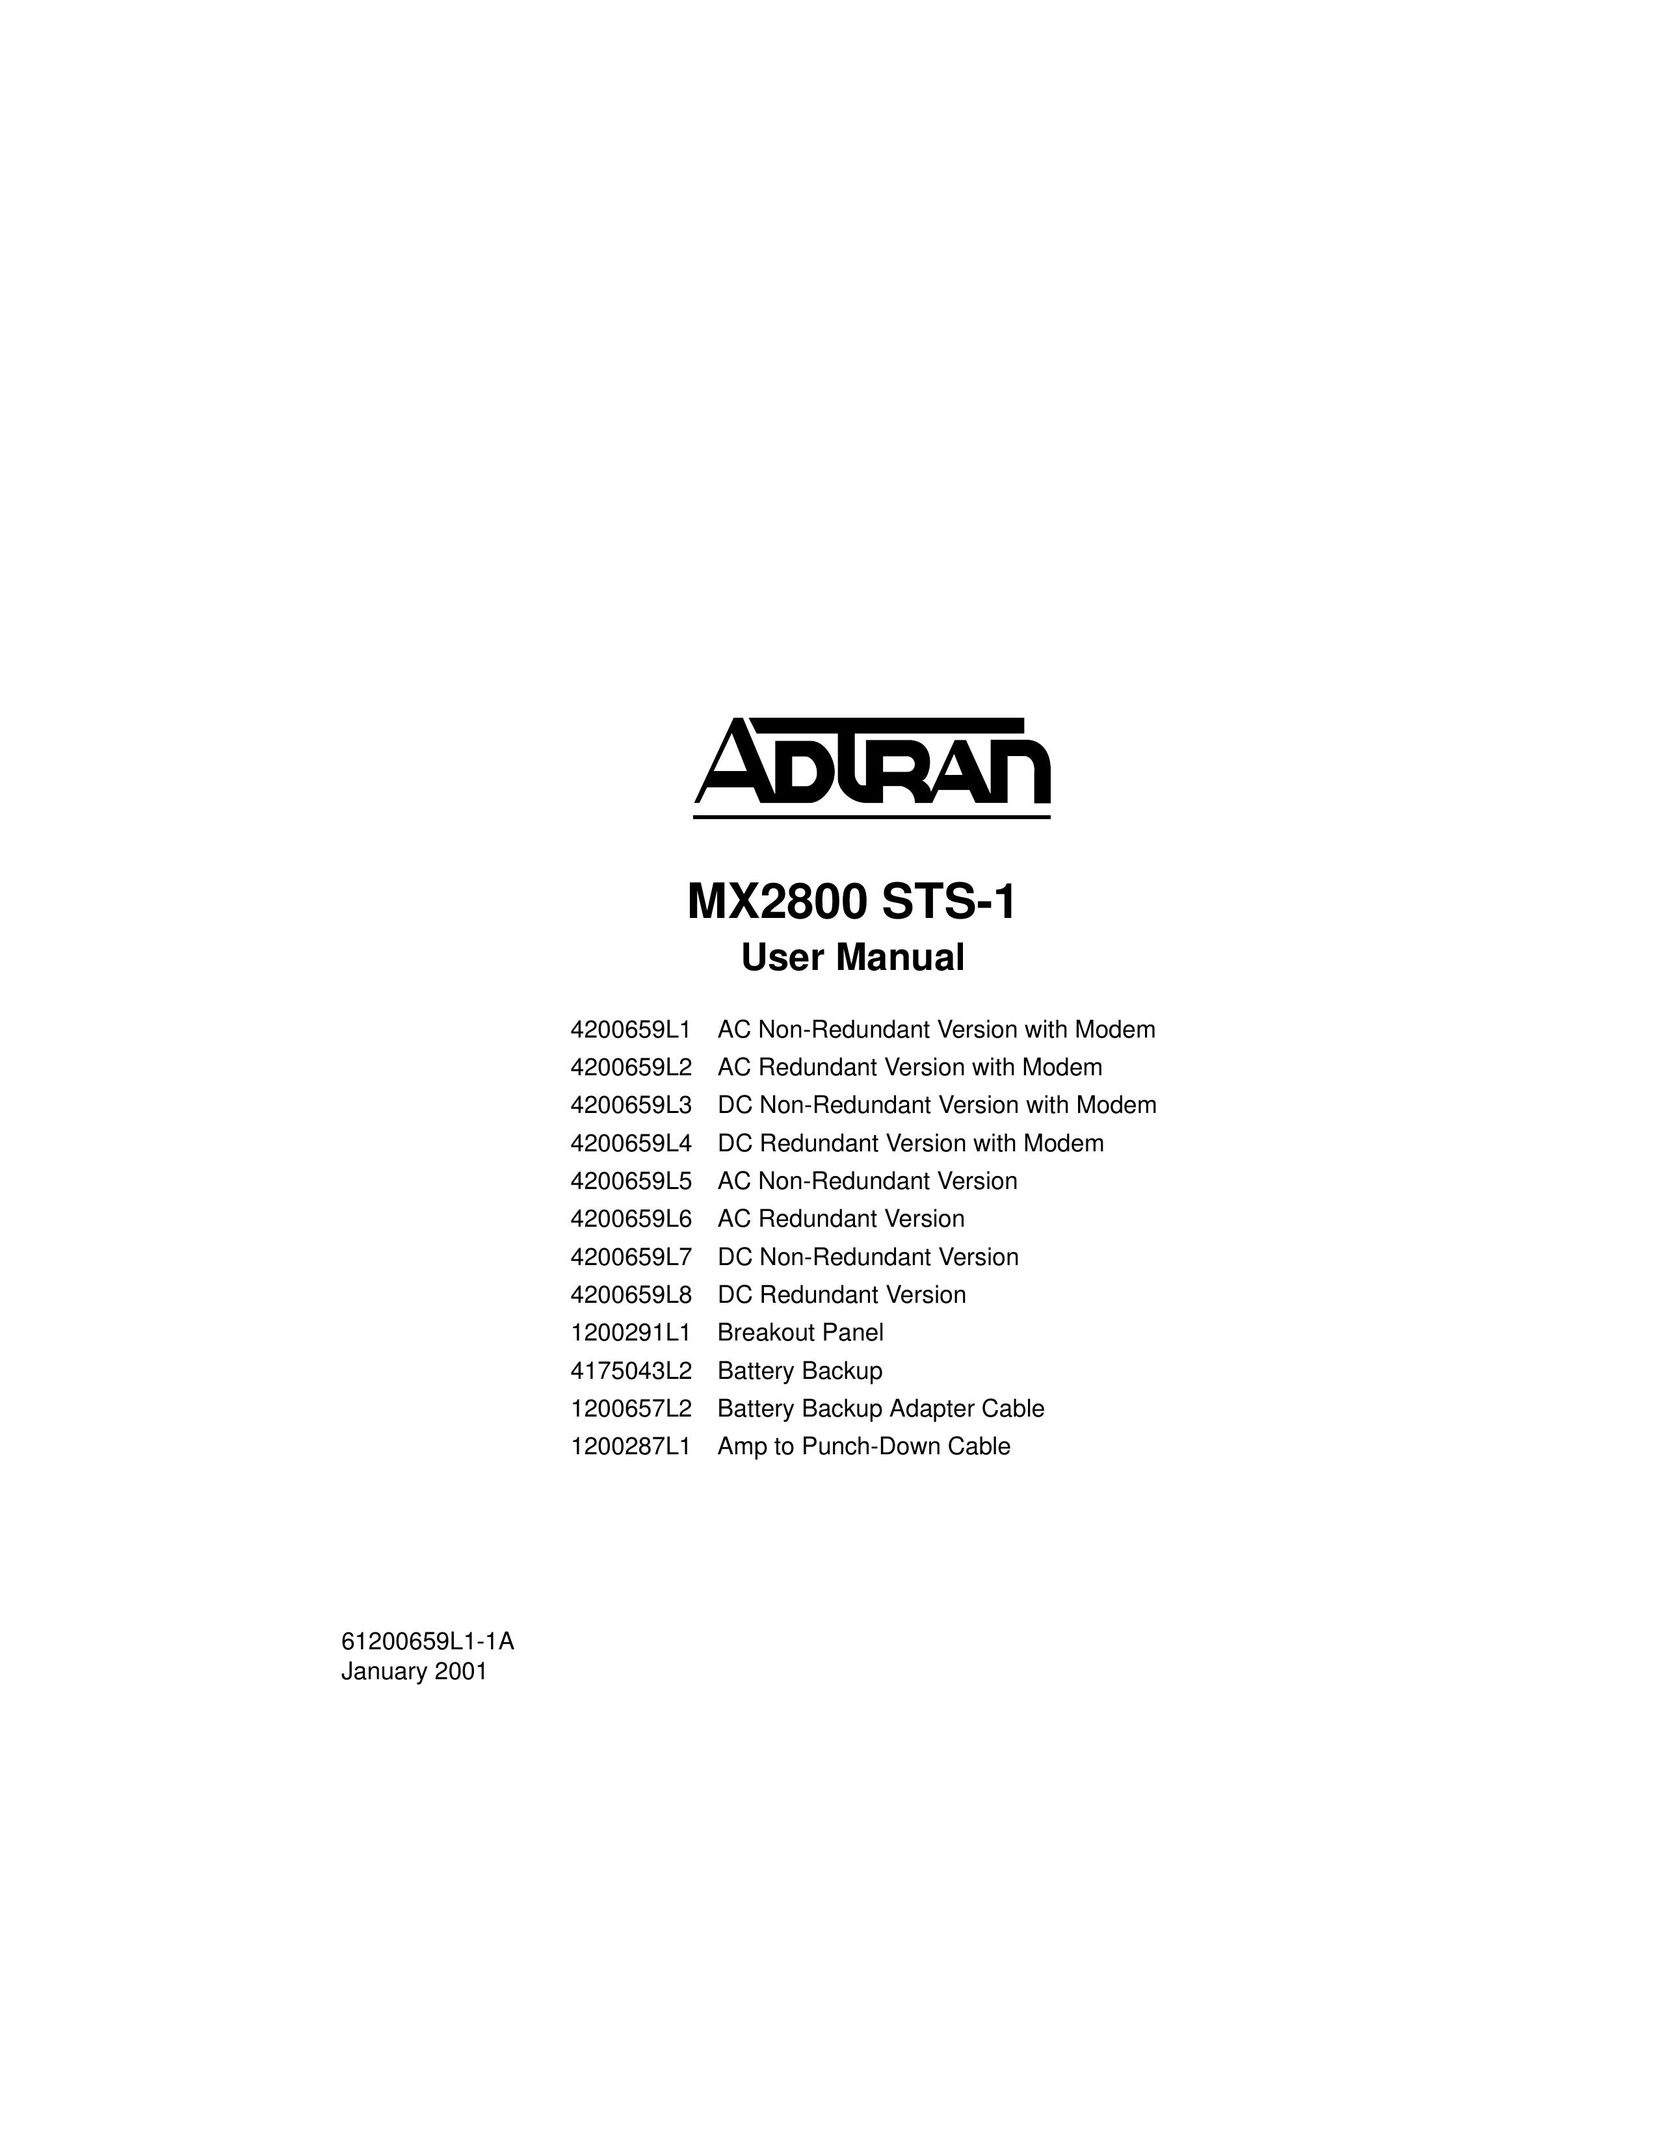 ADTRAN 1200287L1 Switch User Manual